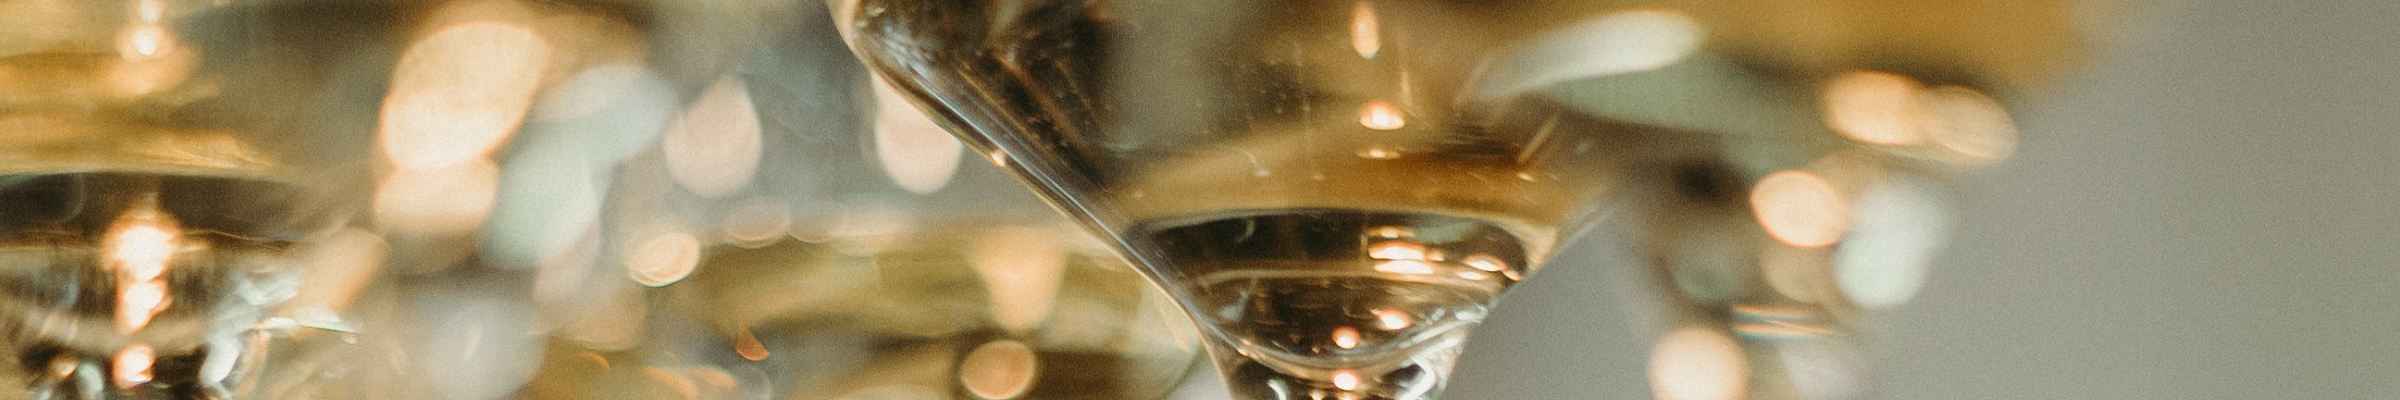 Sélection Meilleurs Vins Blancs en ligne | Conroy Vins et Spiritueux